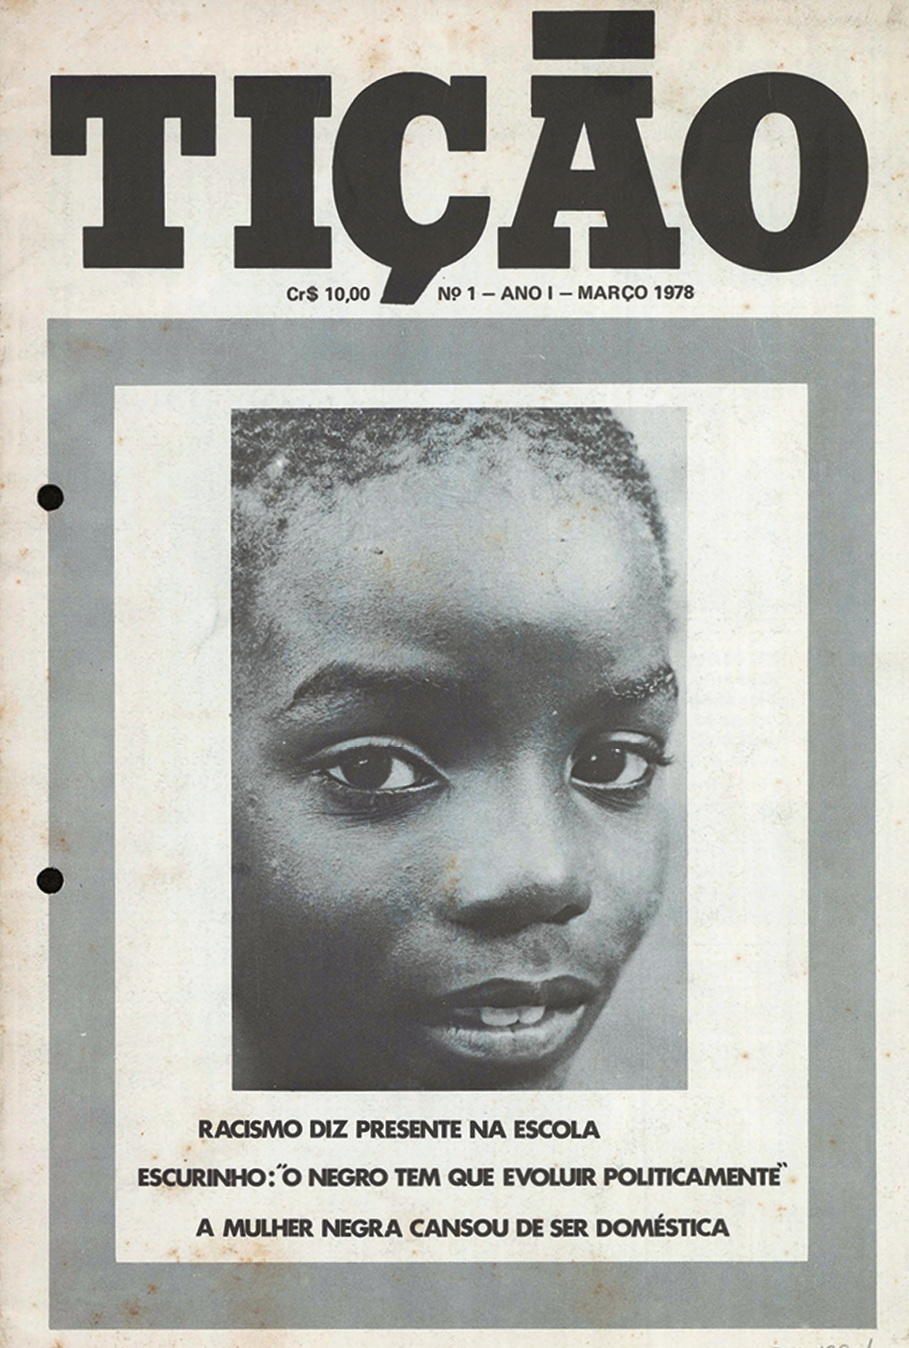 Capa de revista. Na parte superior, o nome da revista: TIÇÃO. Abaixo, fotografia destacando o rosto de uma criança negra. Na parte inferior, o texto: RACISMO DIZ PRESENTE NA ESCOLA. ESCURINHO: 'O NEGRO TEM QUE EVOLUIR POLITICAMENTE'. A MULHER NEGRA CANSOU DE SER DOMÉSTICA.